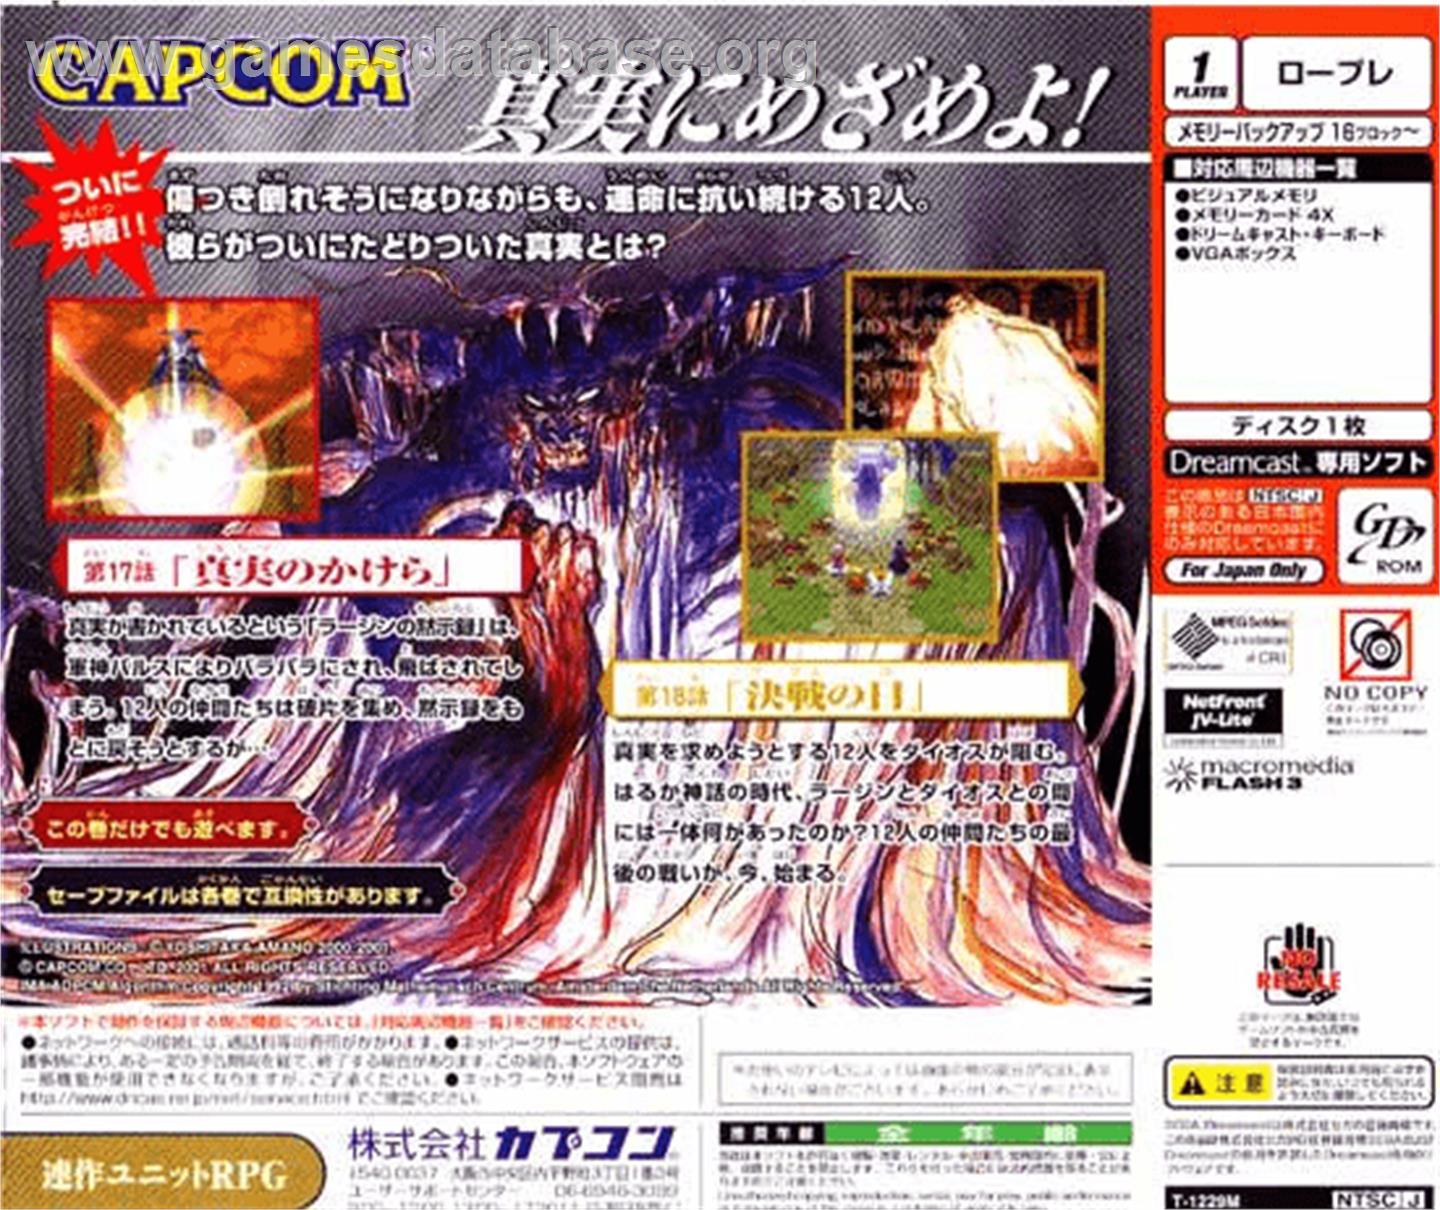 Eldorado Gate Volume 7 - Sega Dreamcast - Artwork - Box Back